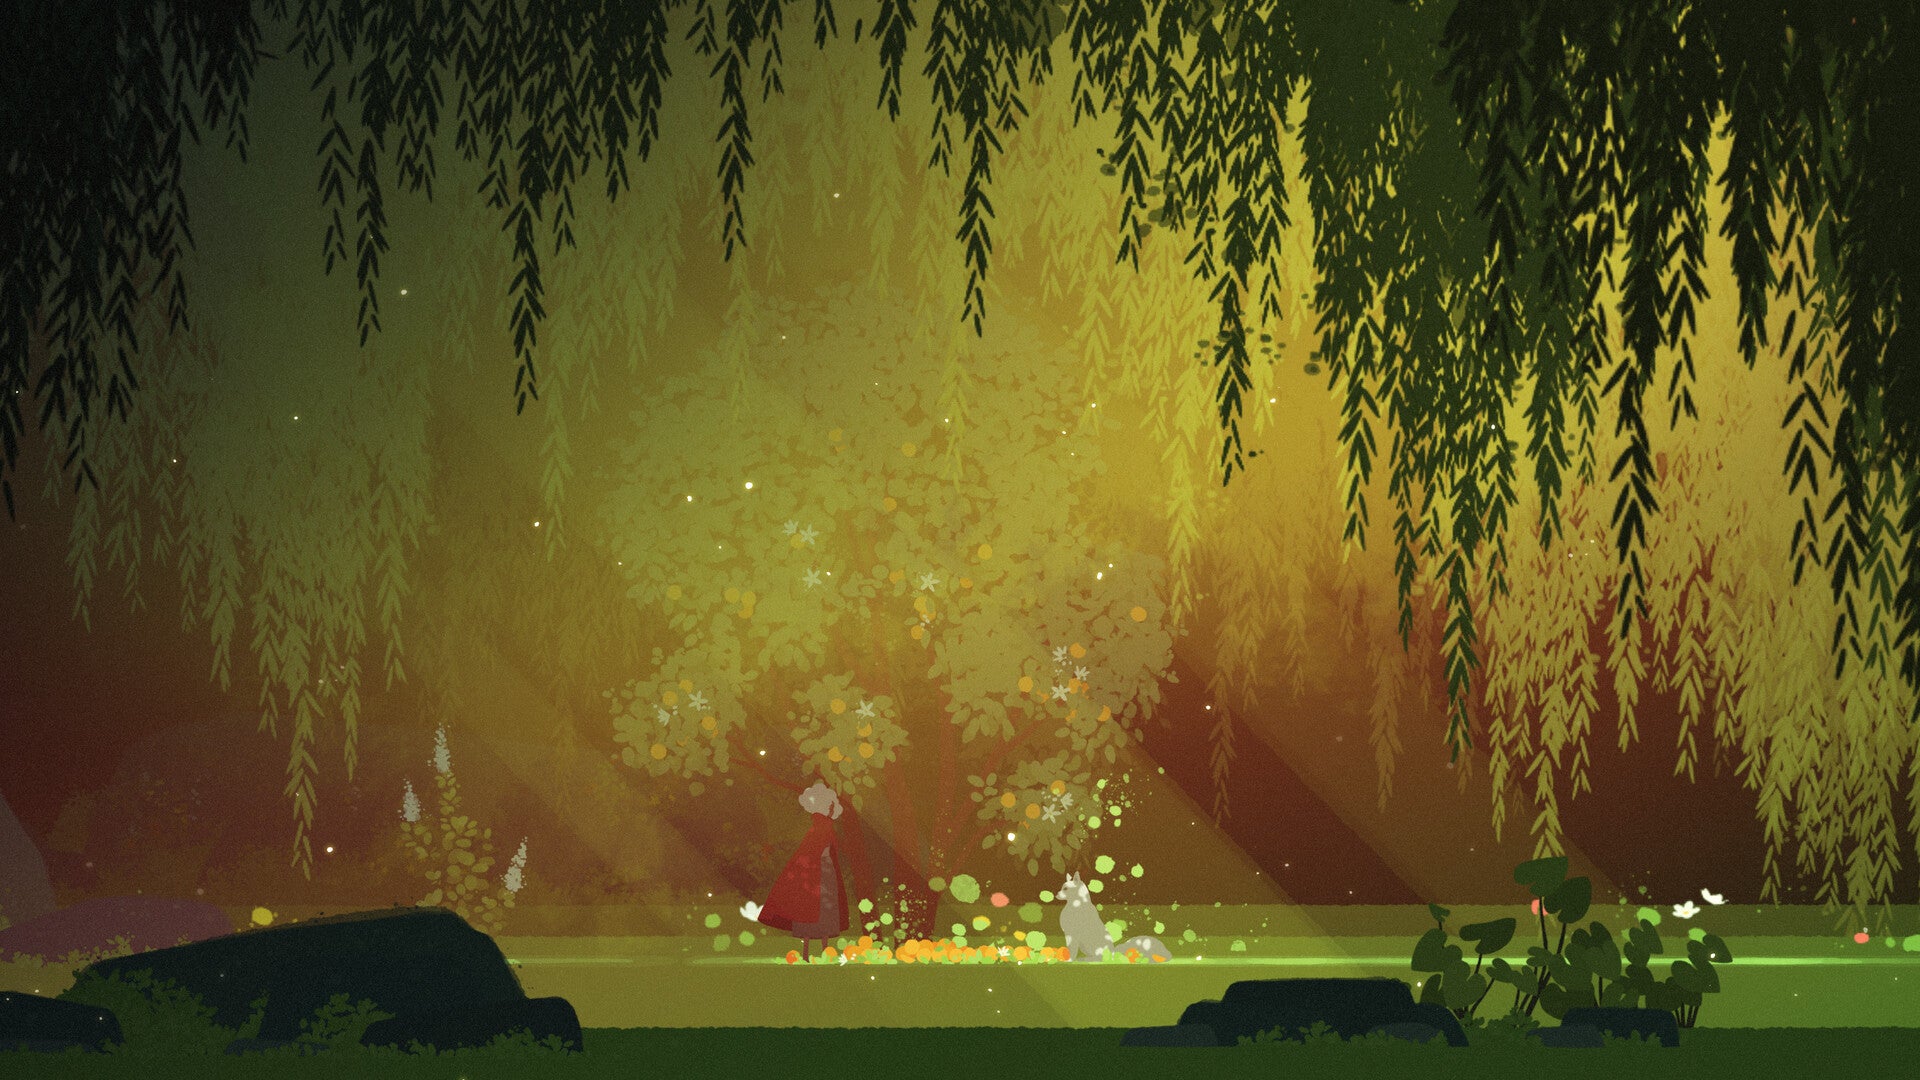 Uno scatto laterale di un piccolo personaggio con un mantello e un lupo che si fronteggiano nel chiaro di una foresta. Lo stile è fortemente illustrativo, con schegge di luce solare che si aprono al centro dell'immagine.